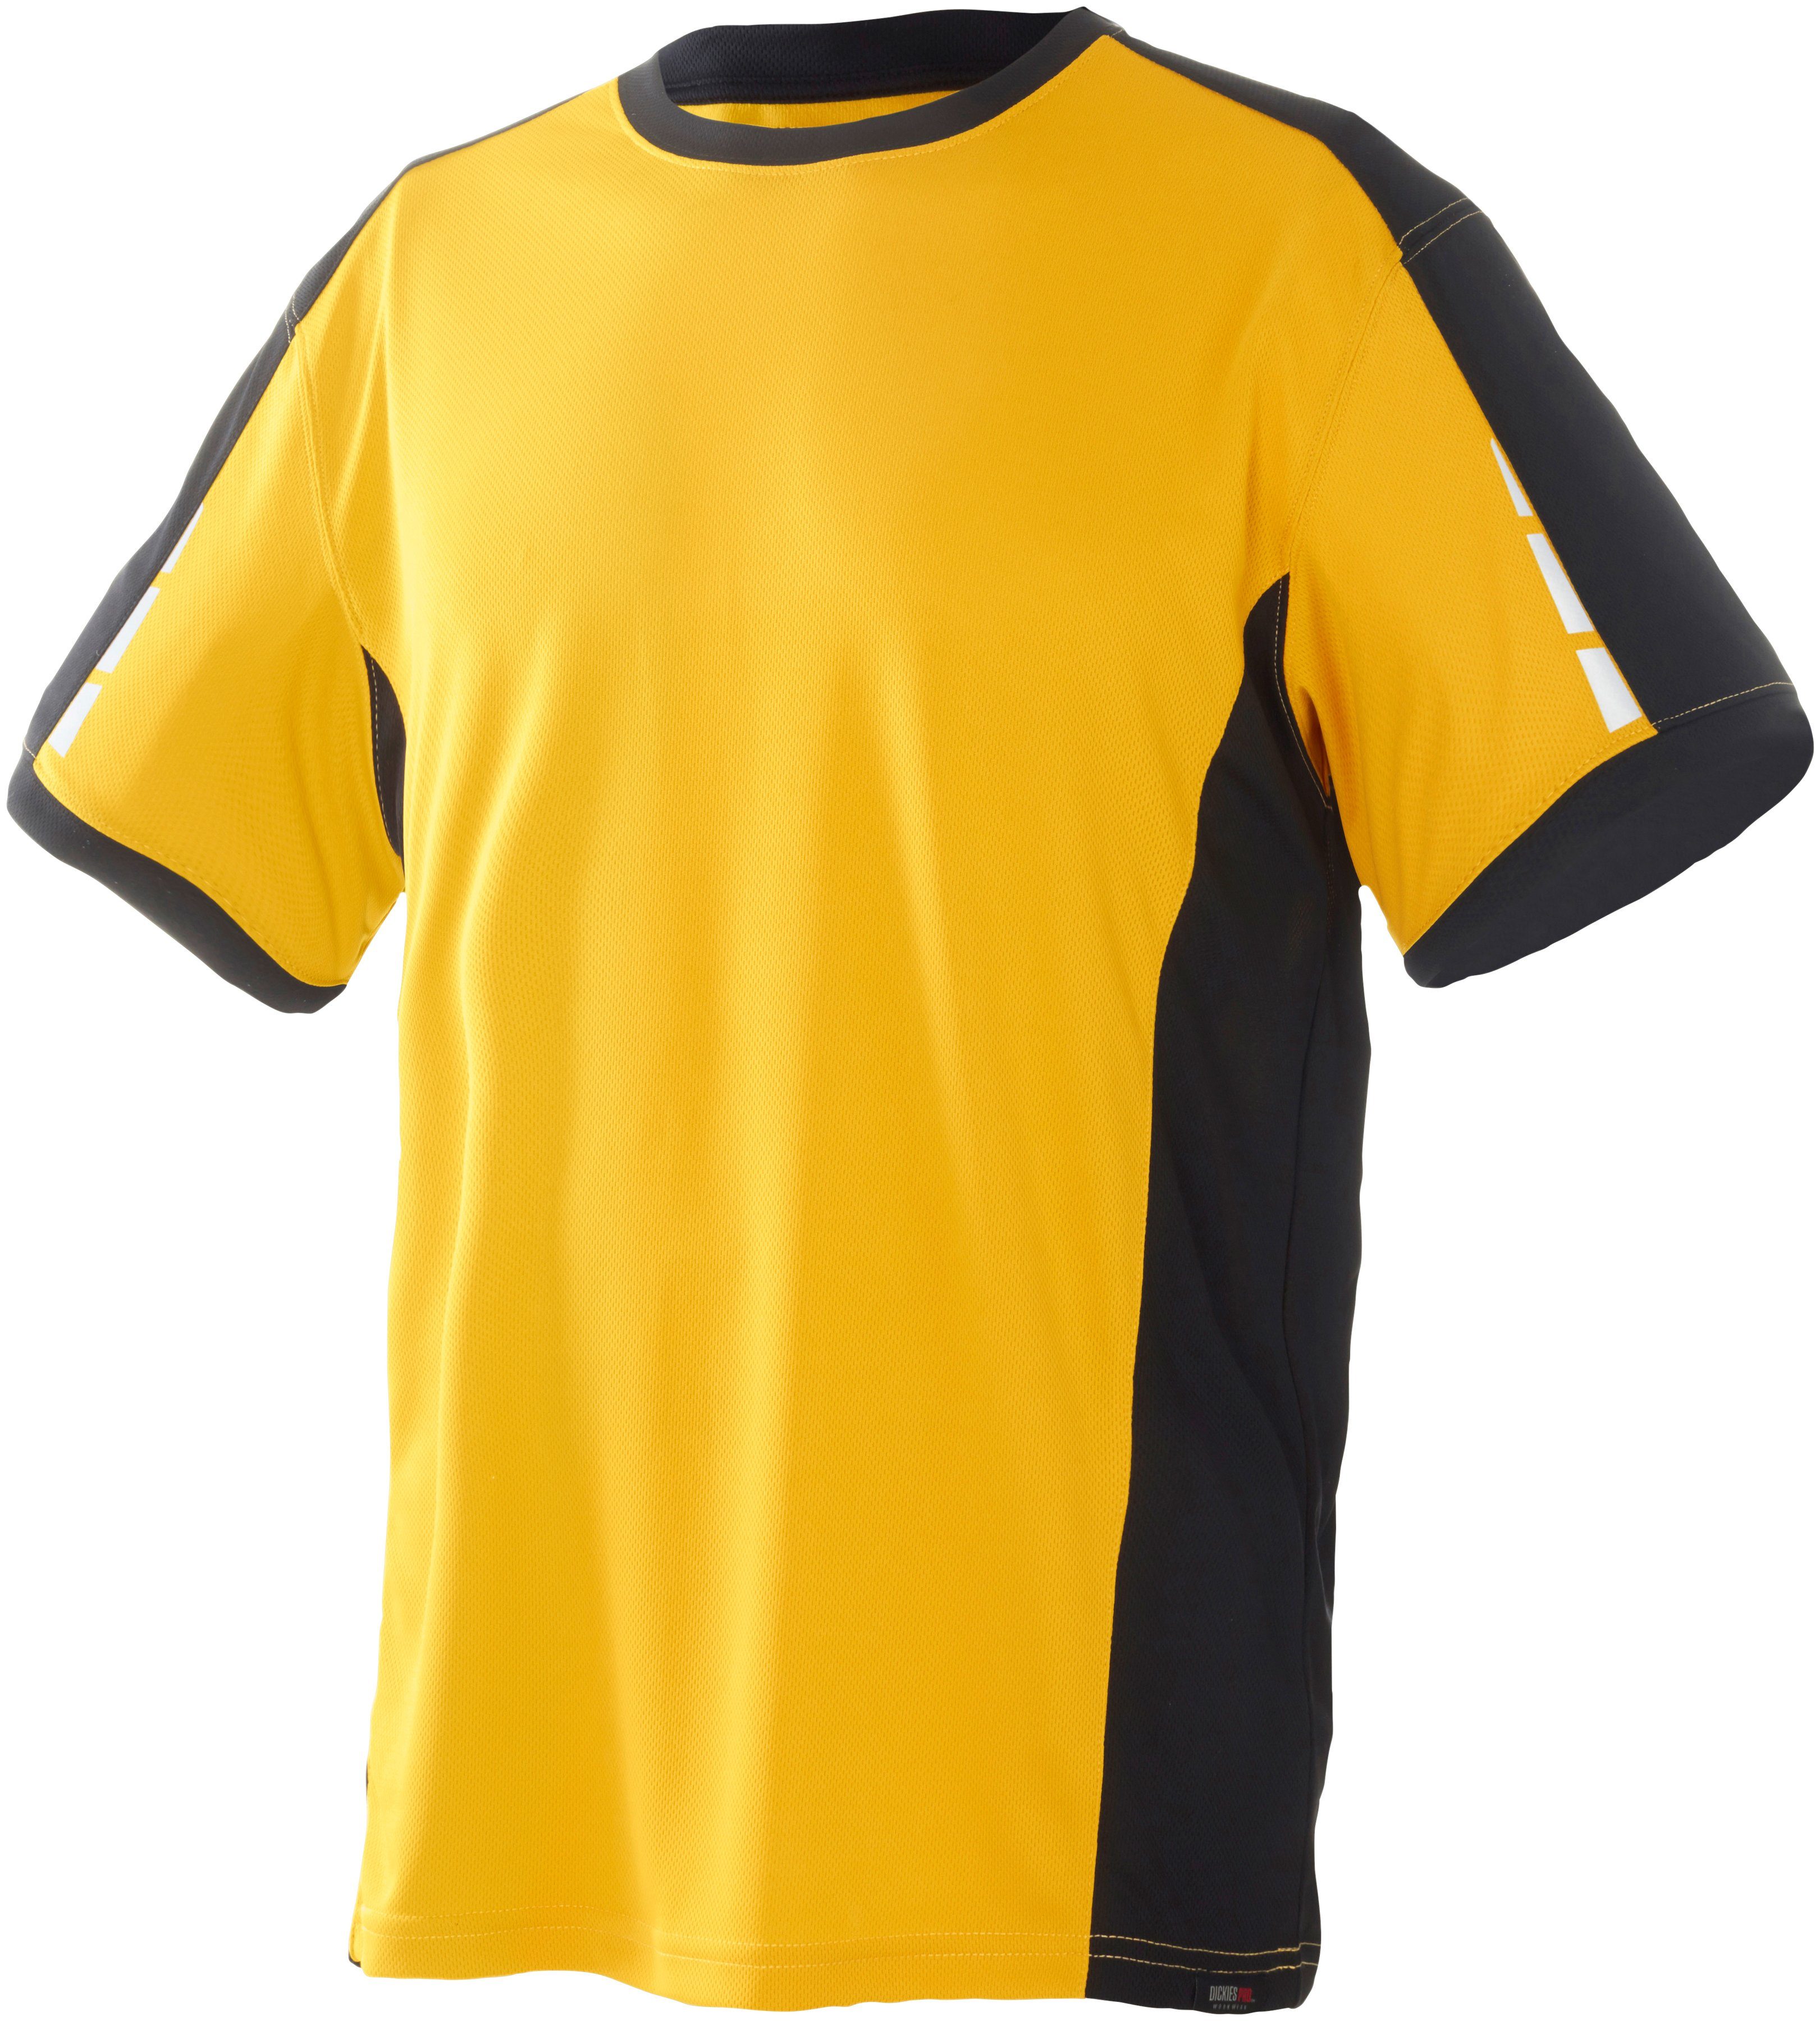 Pro T-Shirt gelb-schwarz Dickies Ärmeln an den reflektierenden mit Details